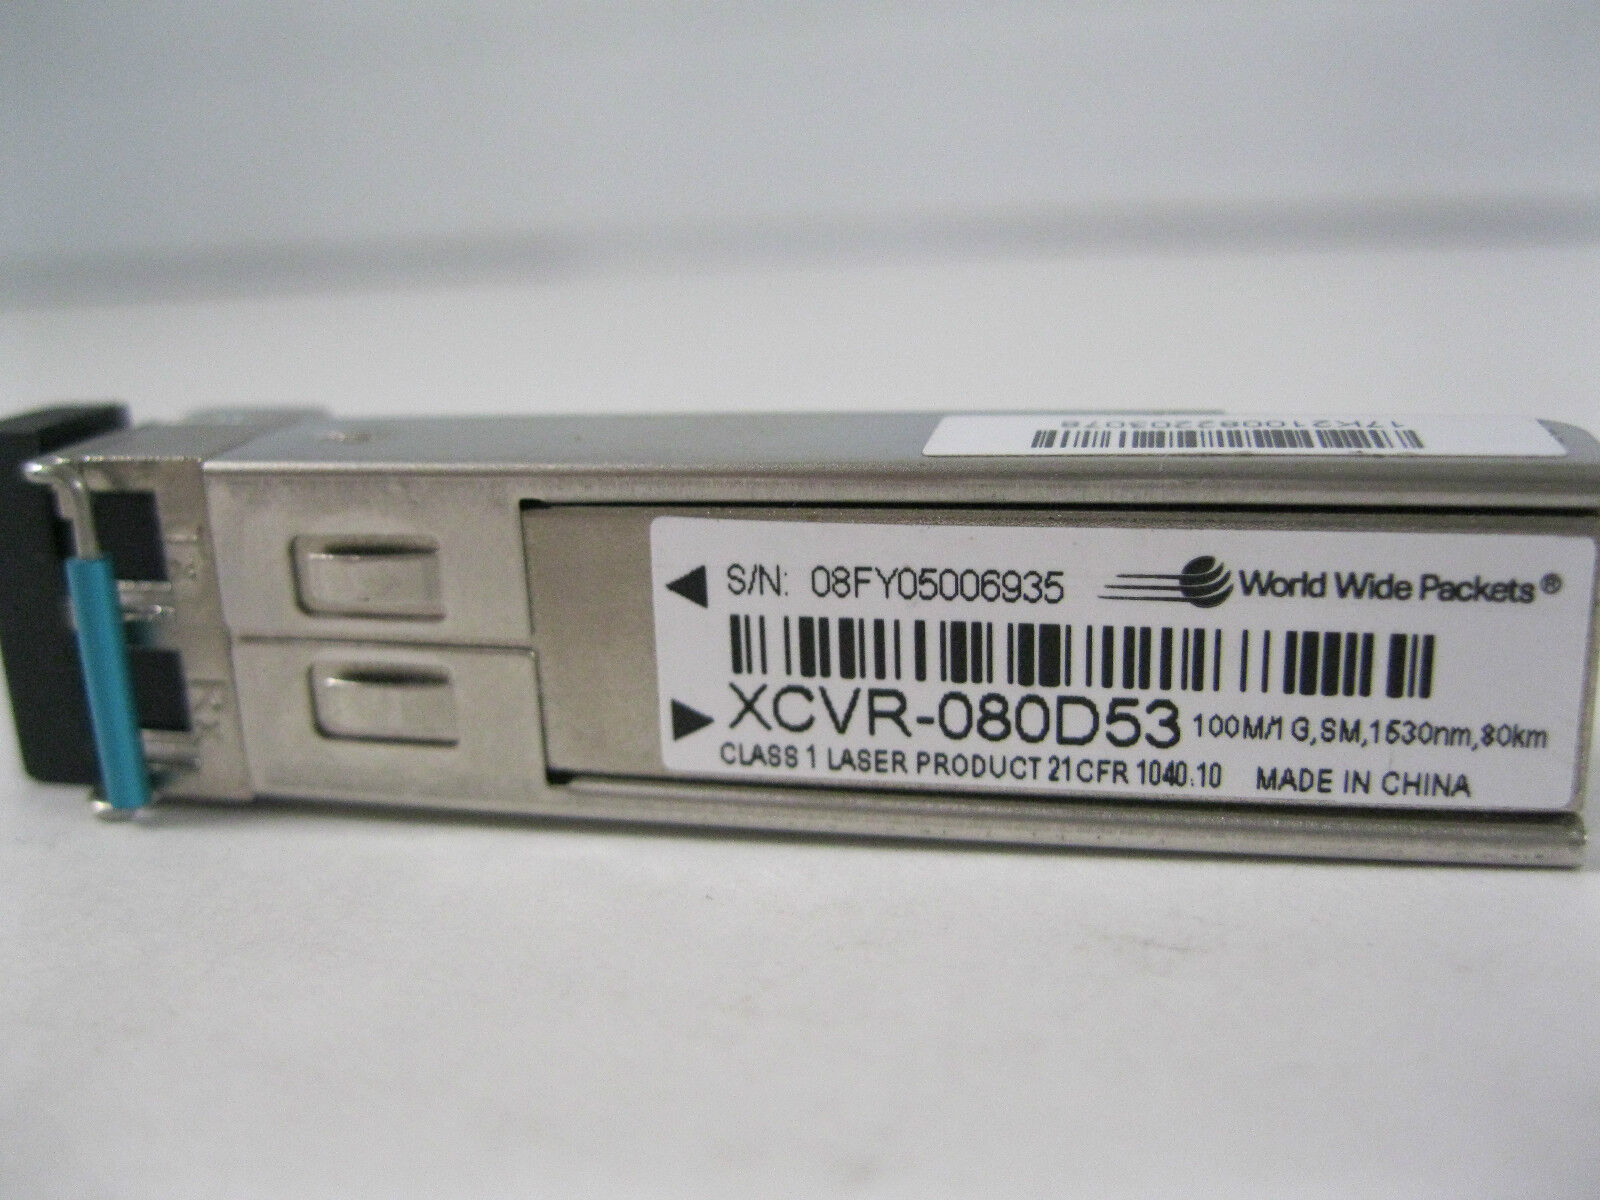 New XCVR-080D53 World Wide Packets 100M/1G SM 1530nm 80km SFP Ciena